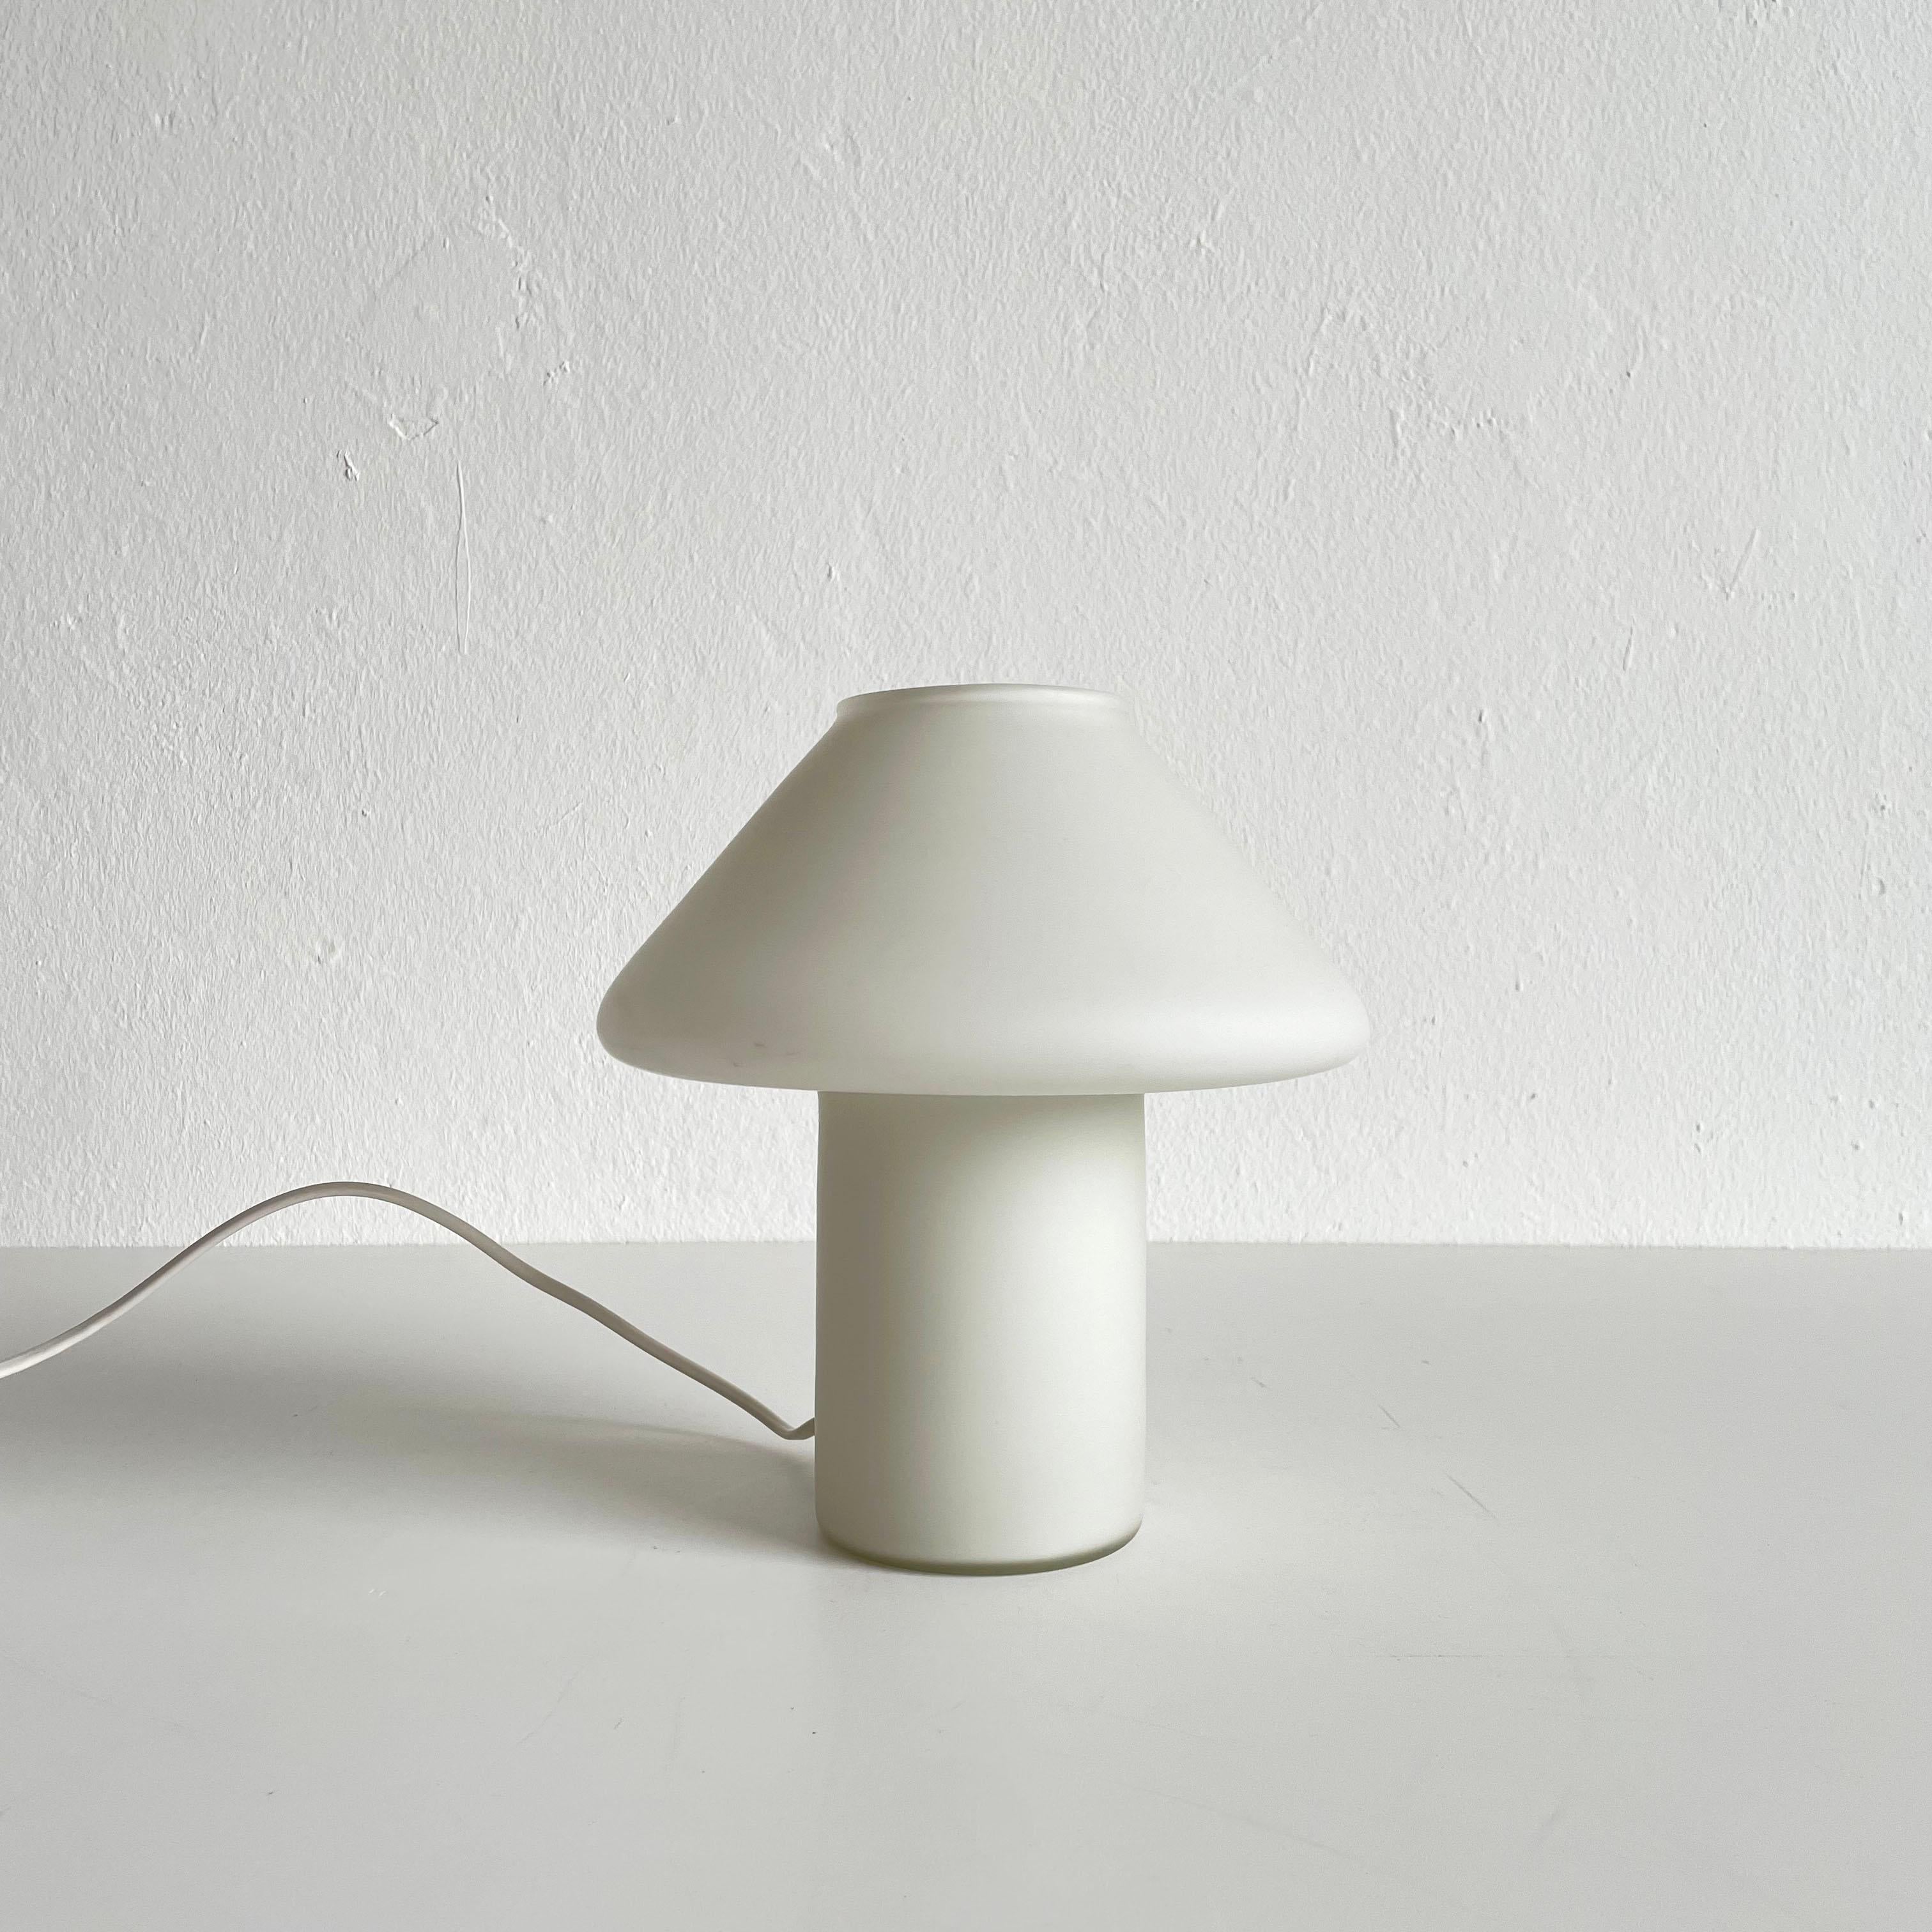 Hala Zeist White Satin Glass Mushroom Table Lamp, Netherlands, 1970s-1980s For Sale 1